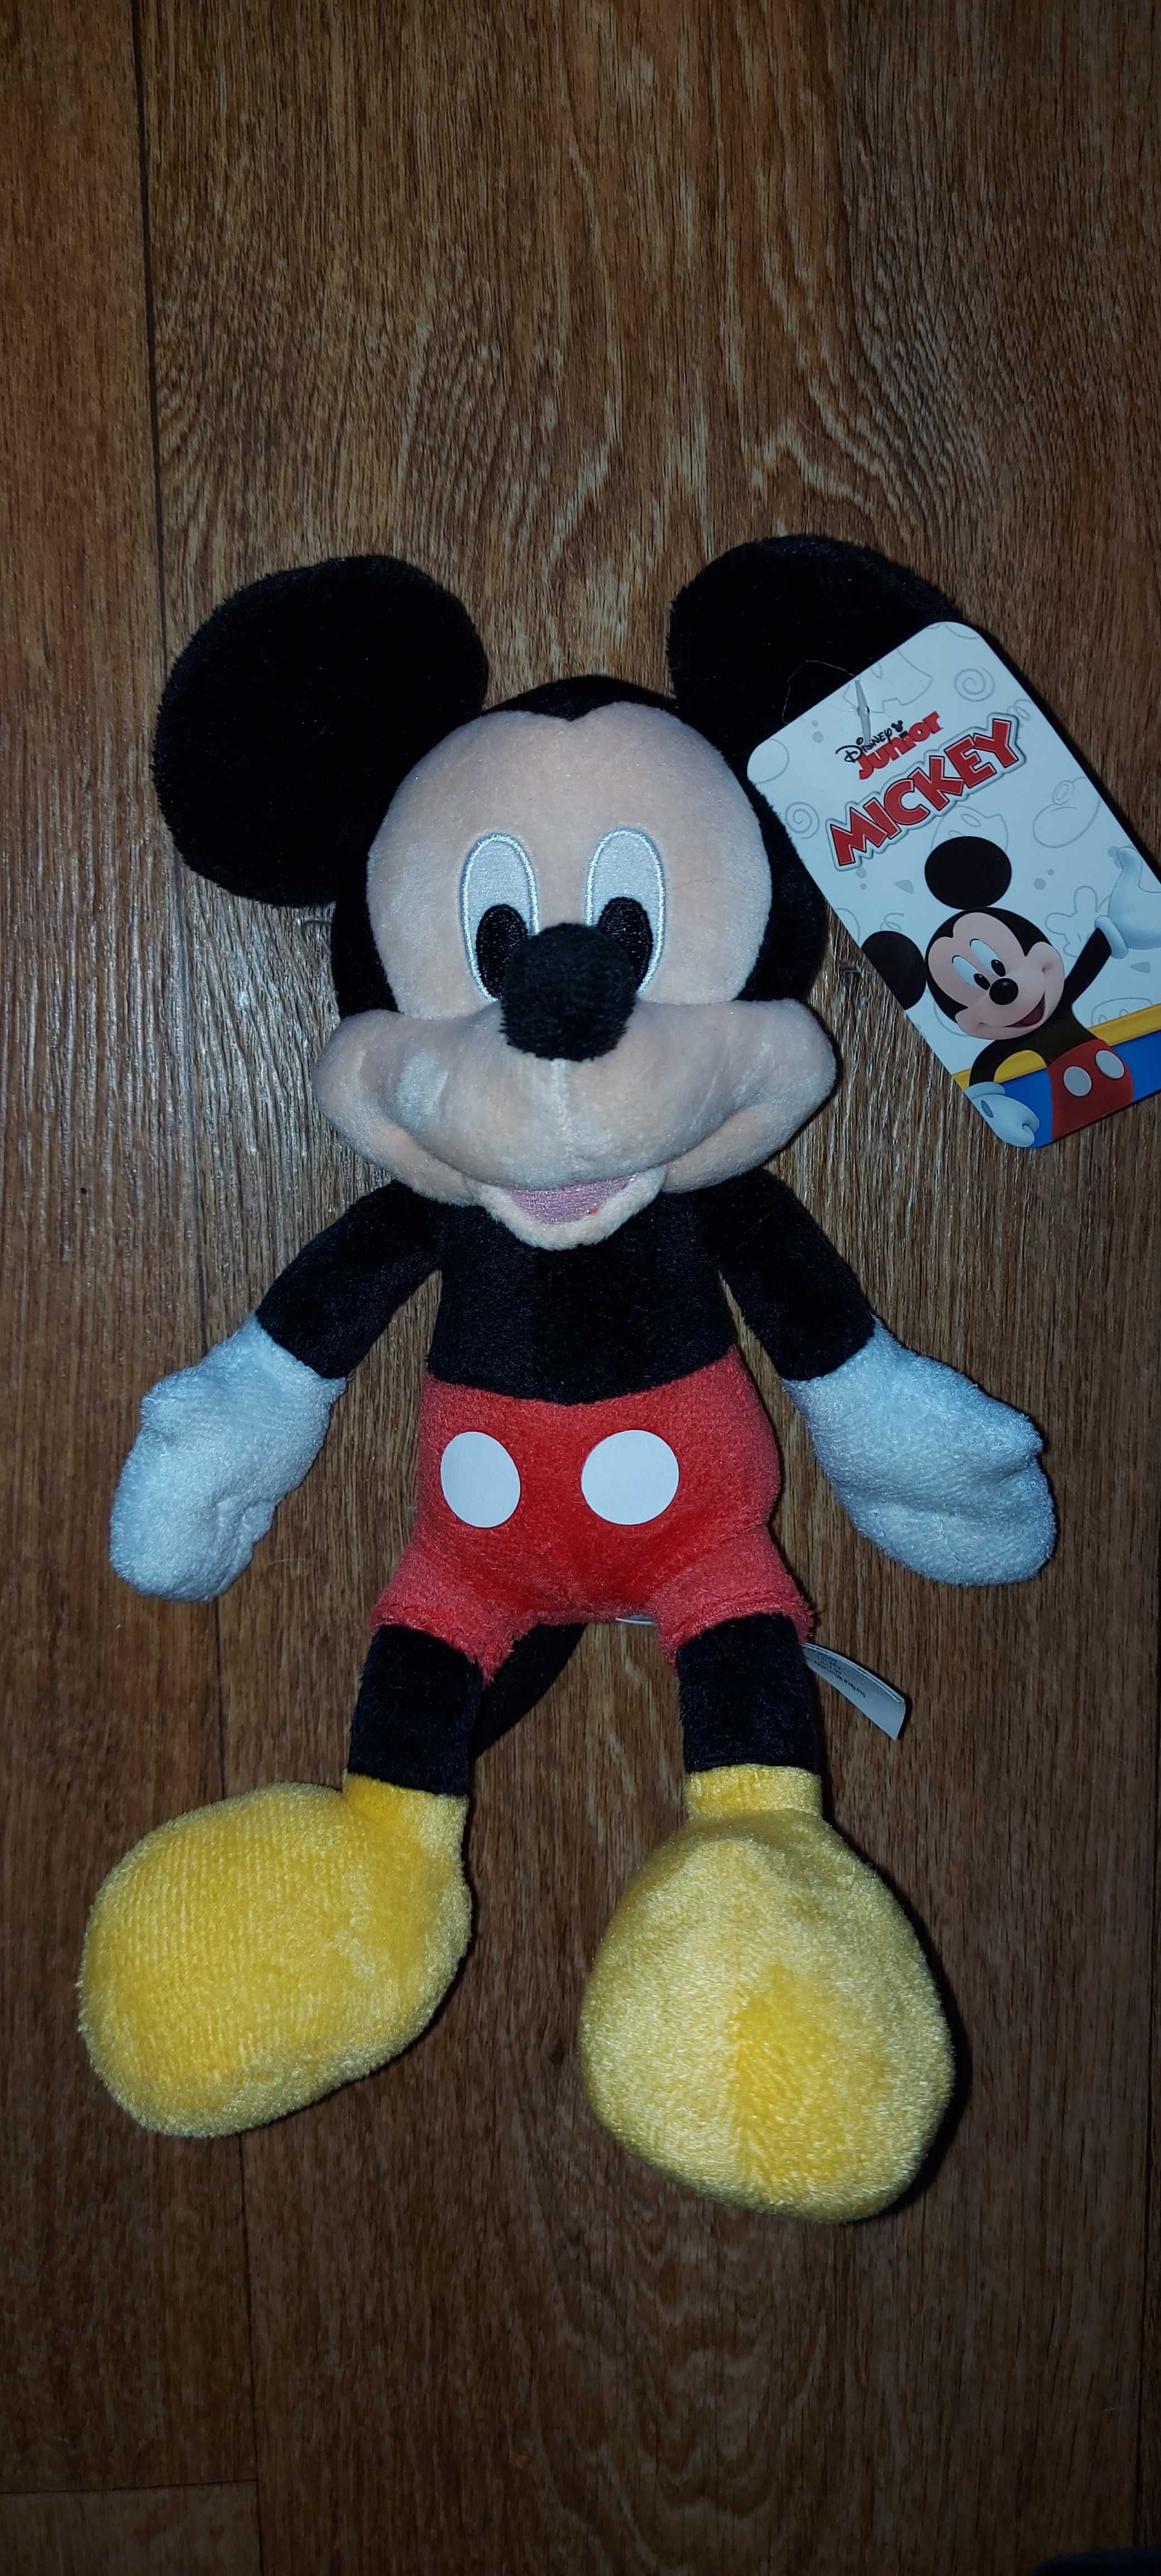 Disney Міккі Маус Микки Маус Mickey Mouse 30 см